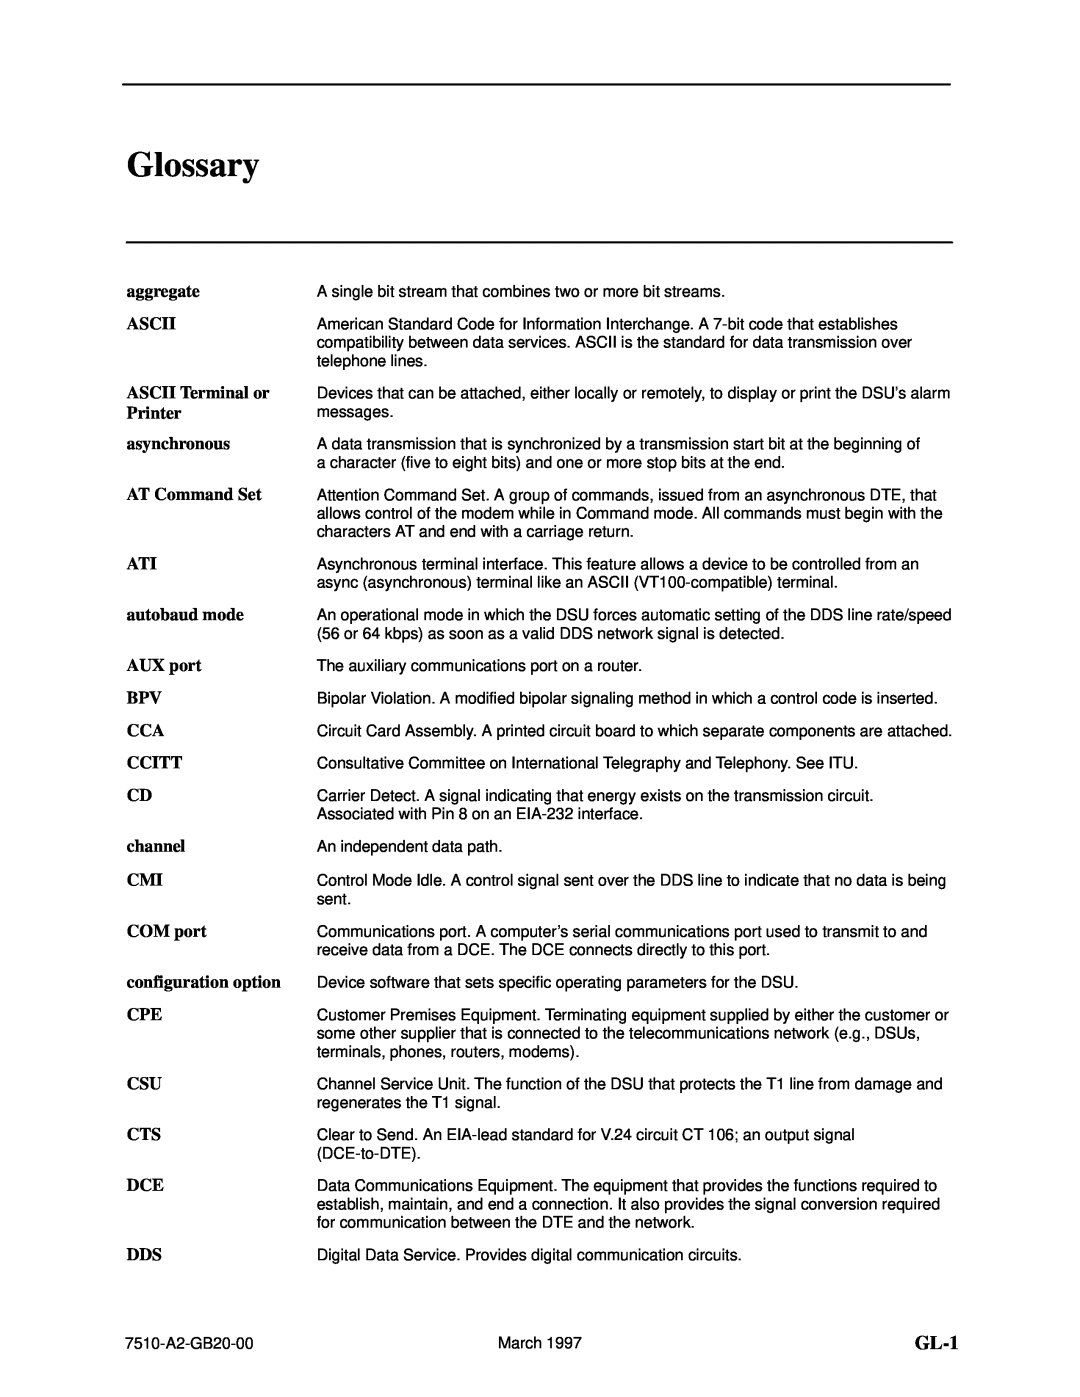 Paradyne 727 manual Glossary, GL-1 